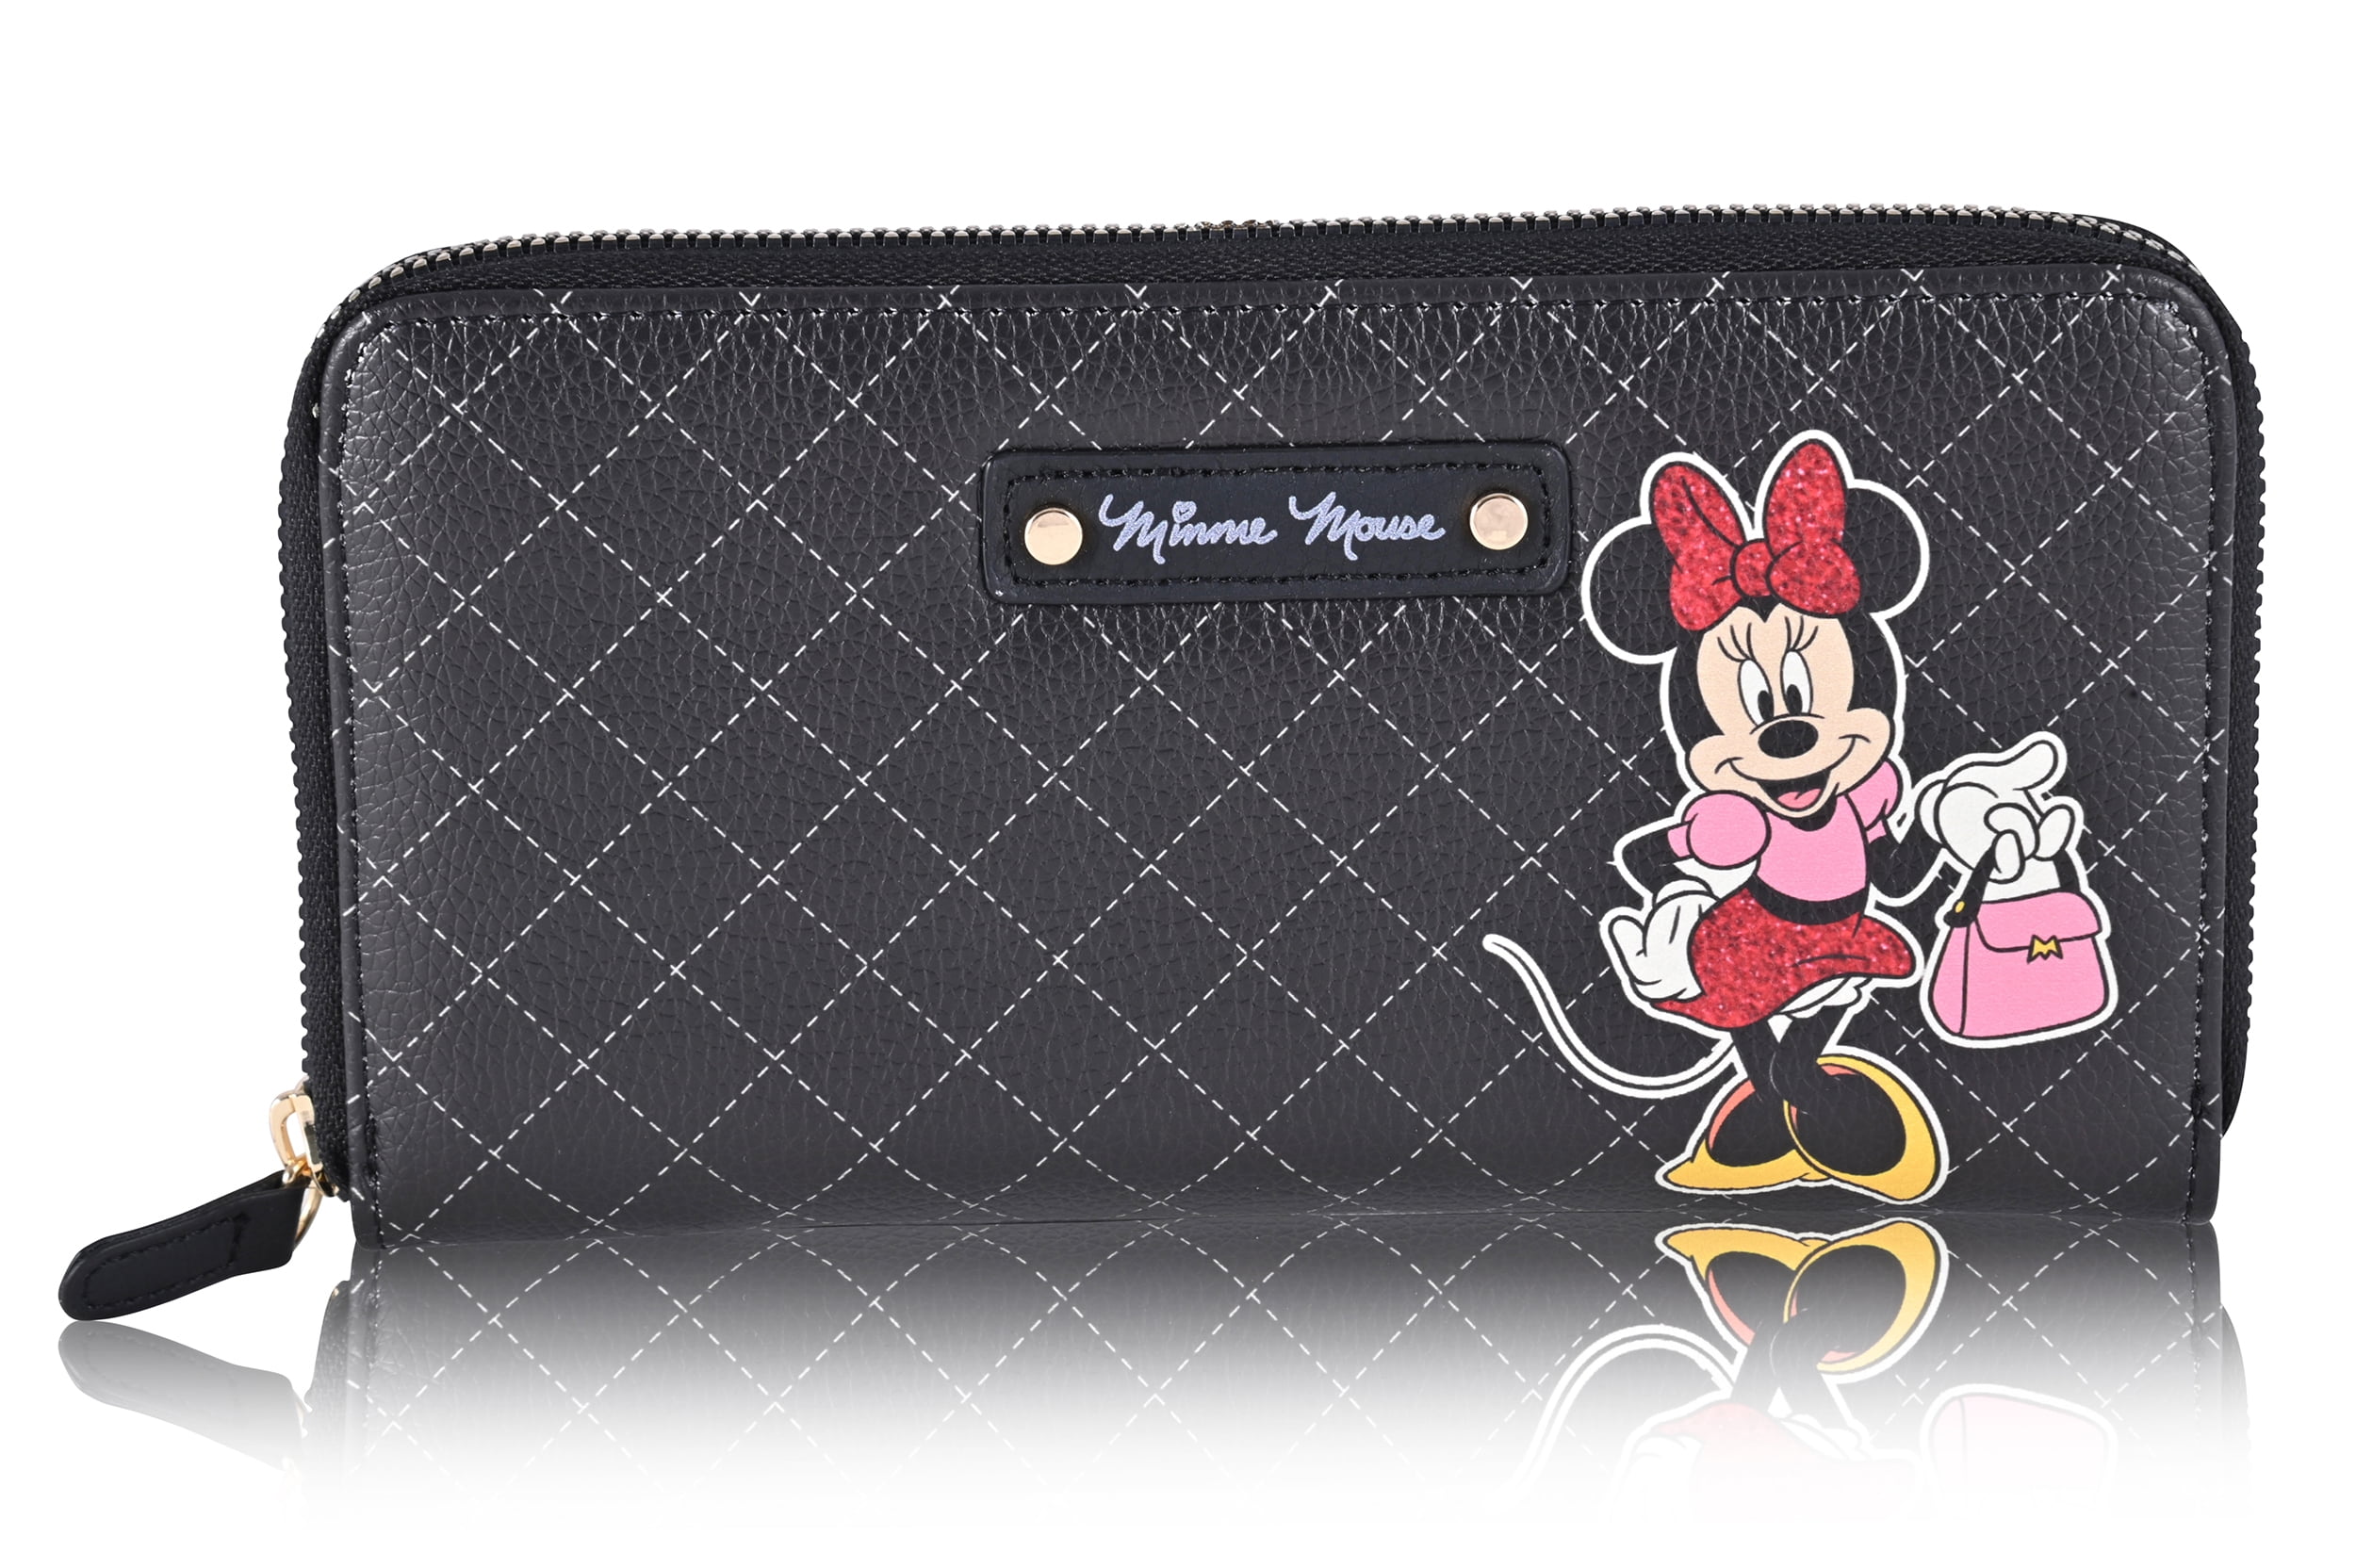 Disney 7 Minnie Mouse Zip Around Wallet in Polyurethane - Black